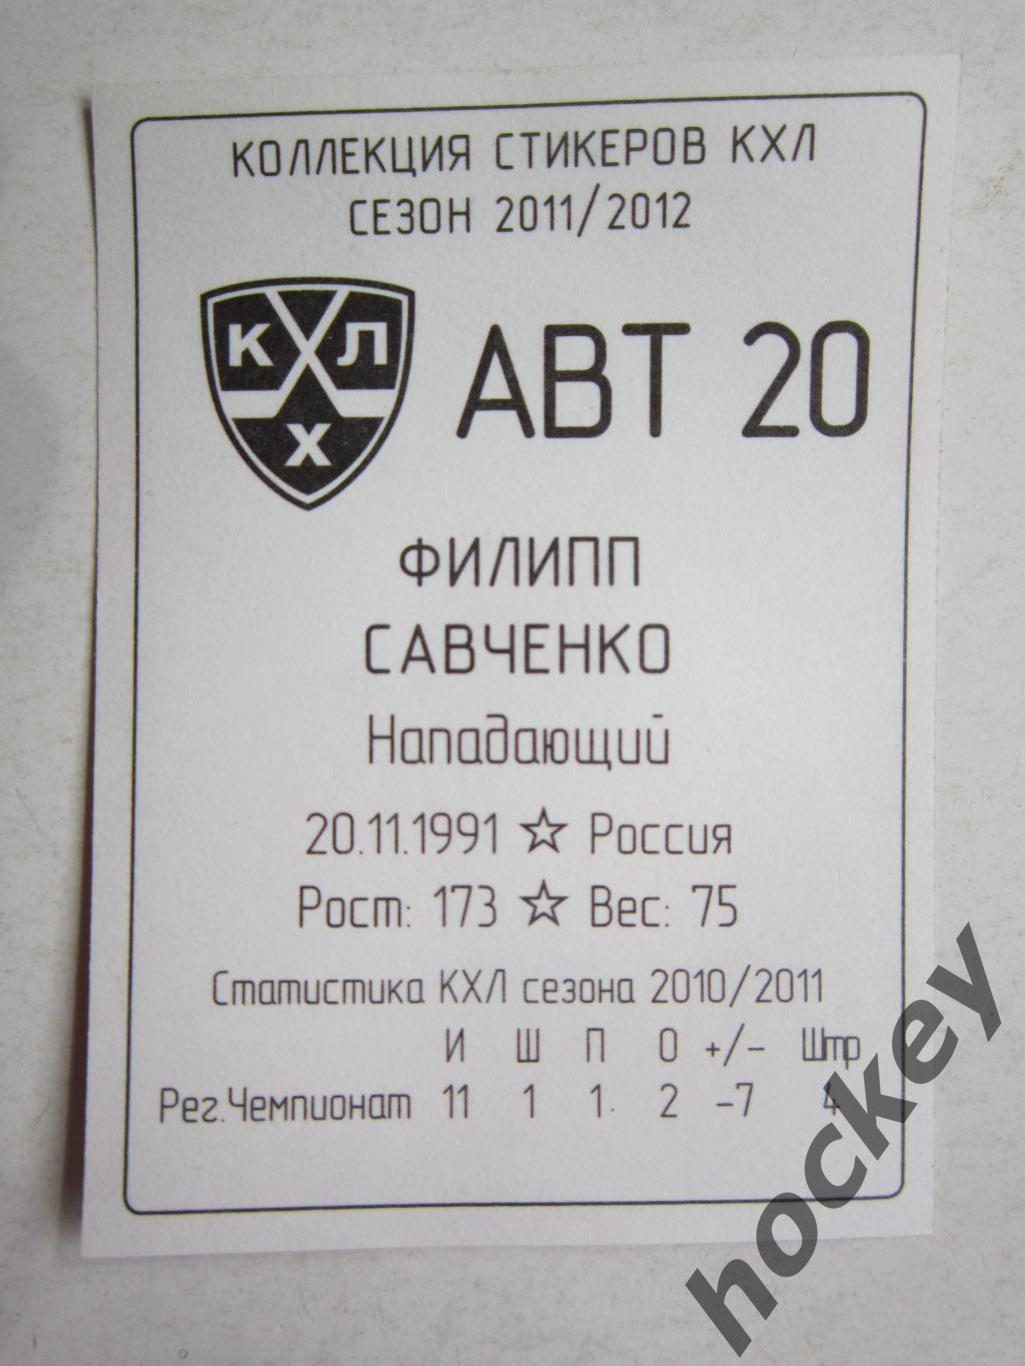 Филипп Савченко (Автомобилист). № 20. Наклейка. SeReal КХЛ 2011/2012. 1